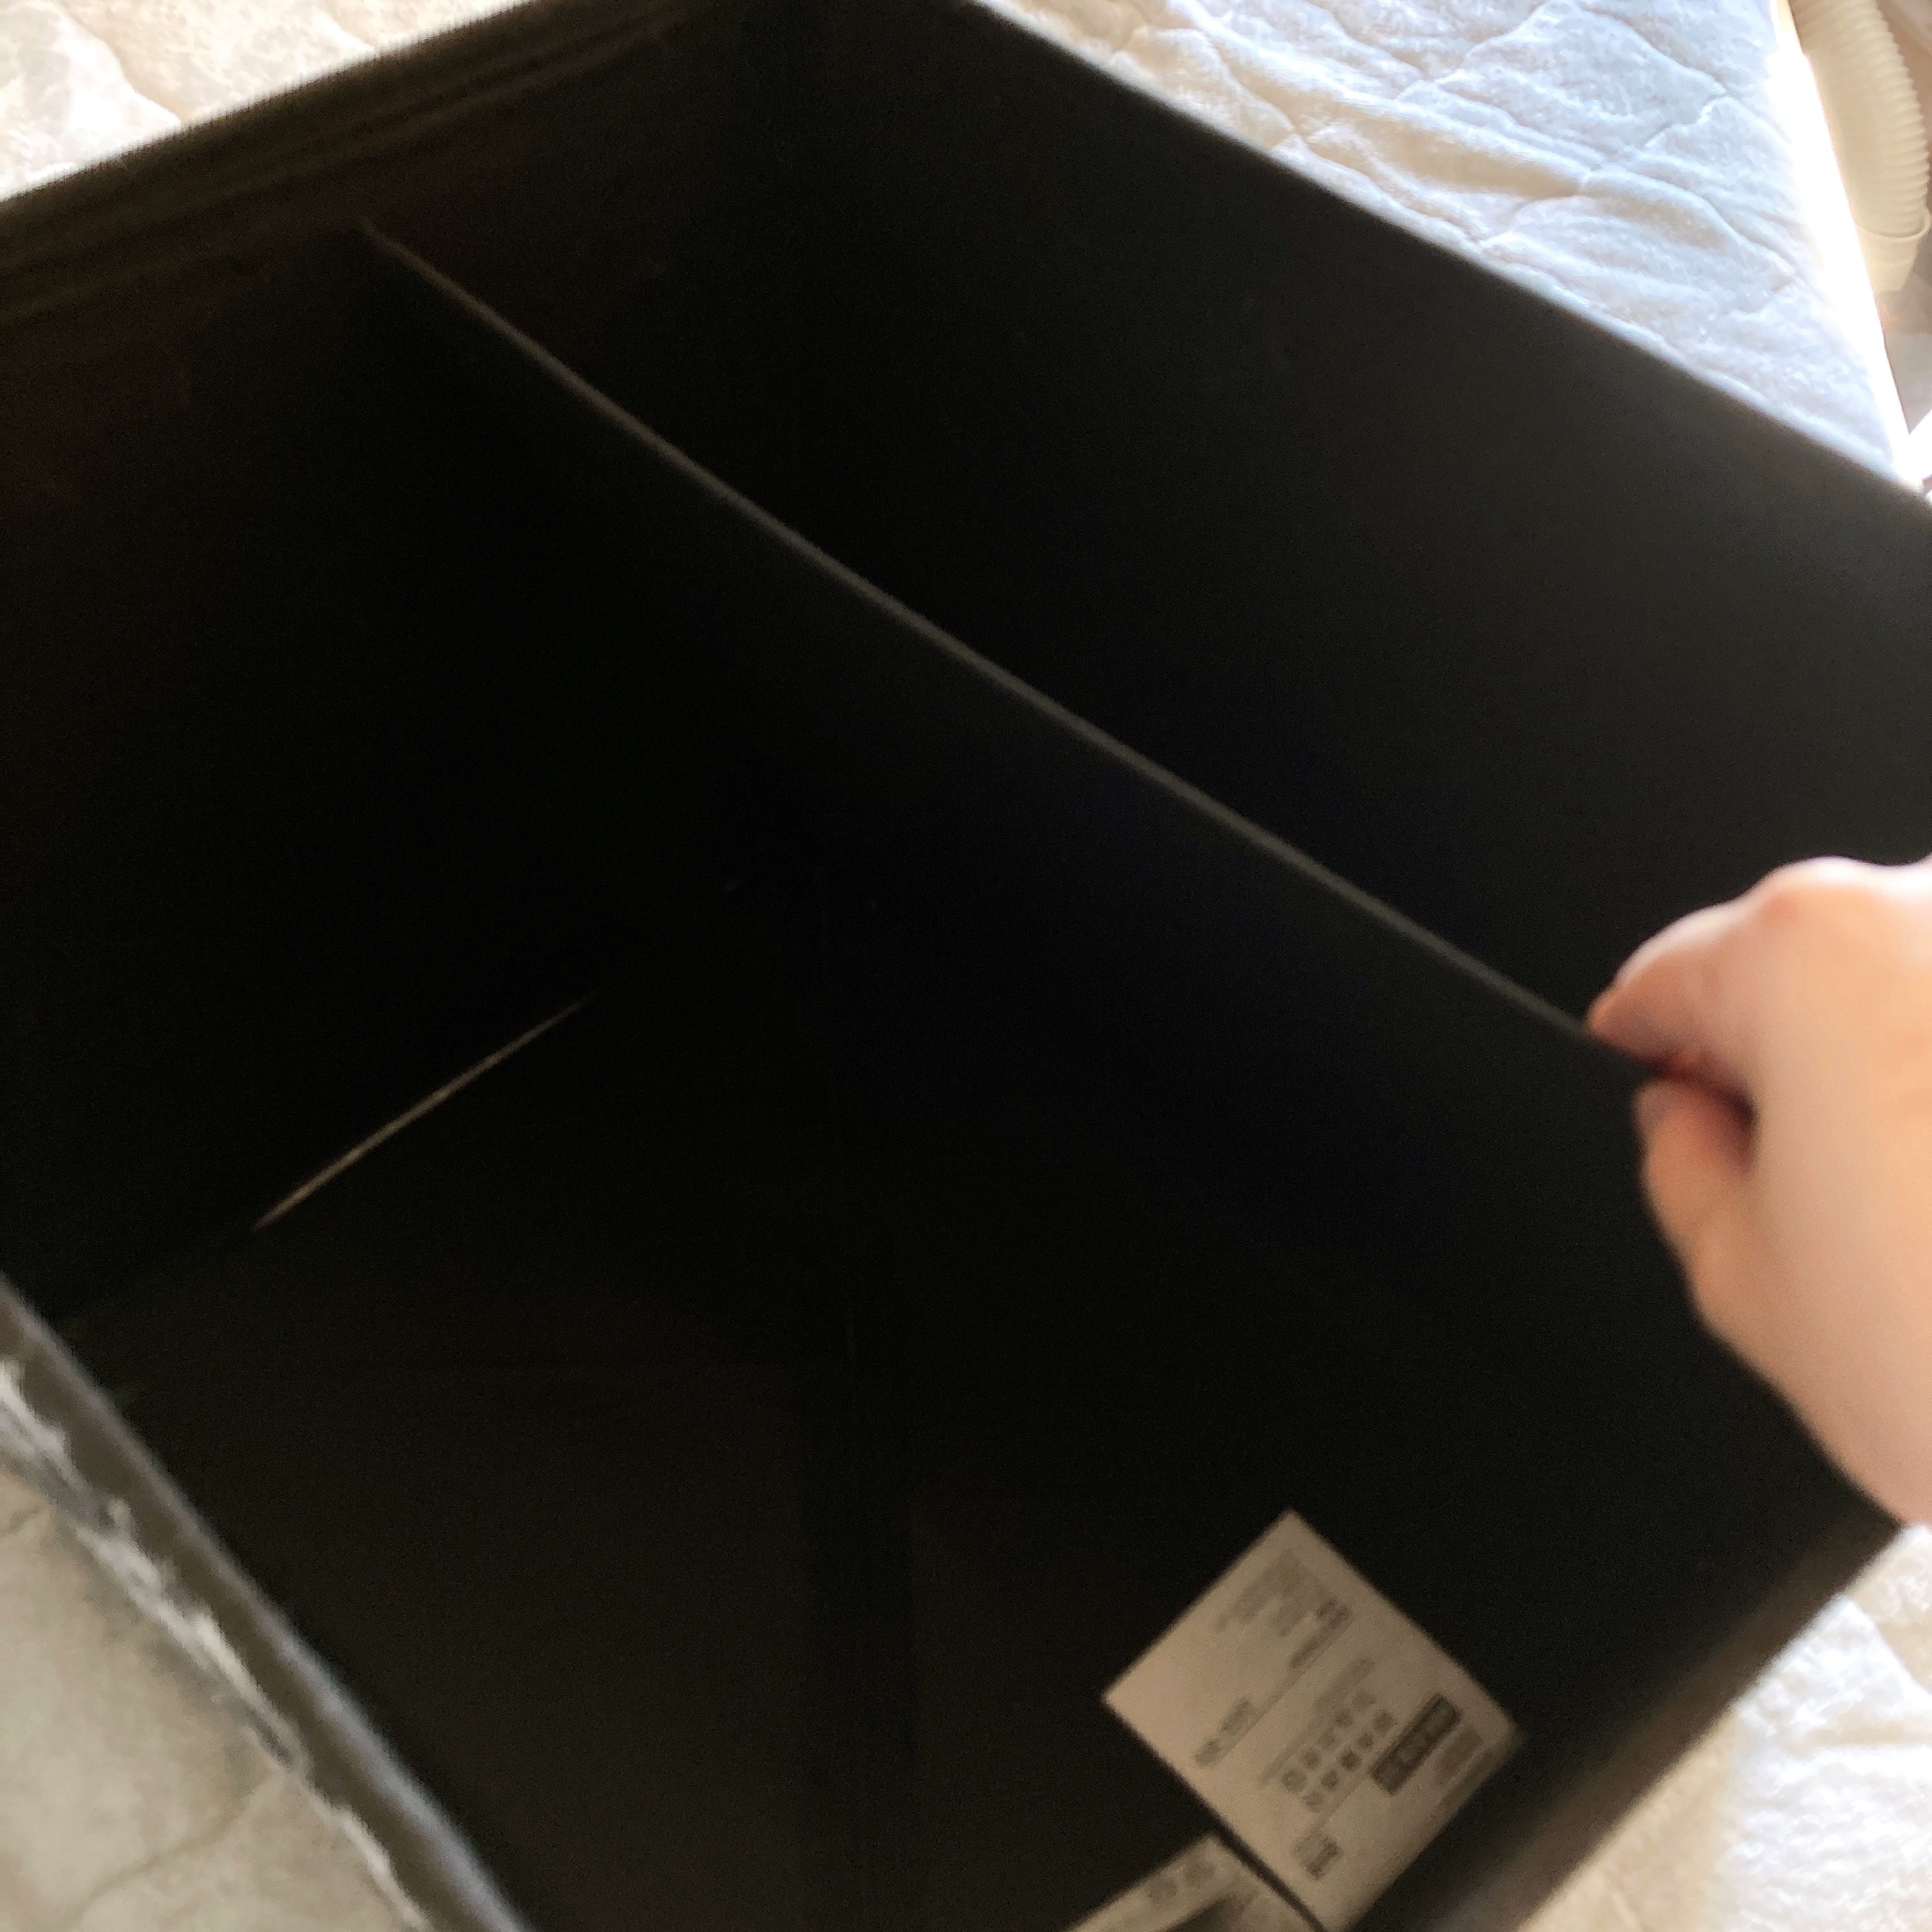 IKEA（イケア）のオススメの収納アイテム「DRÖNA ドローナボックス, ホワイト/ブラック 模様入り, 33x38x33cm」